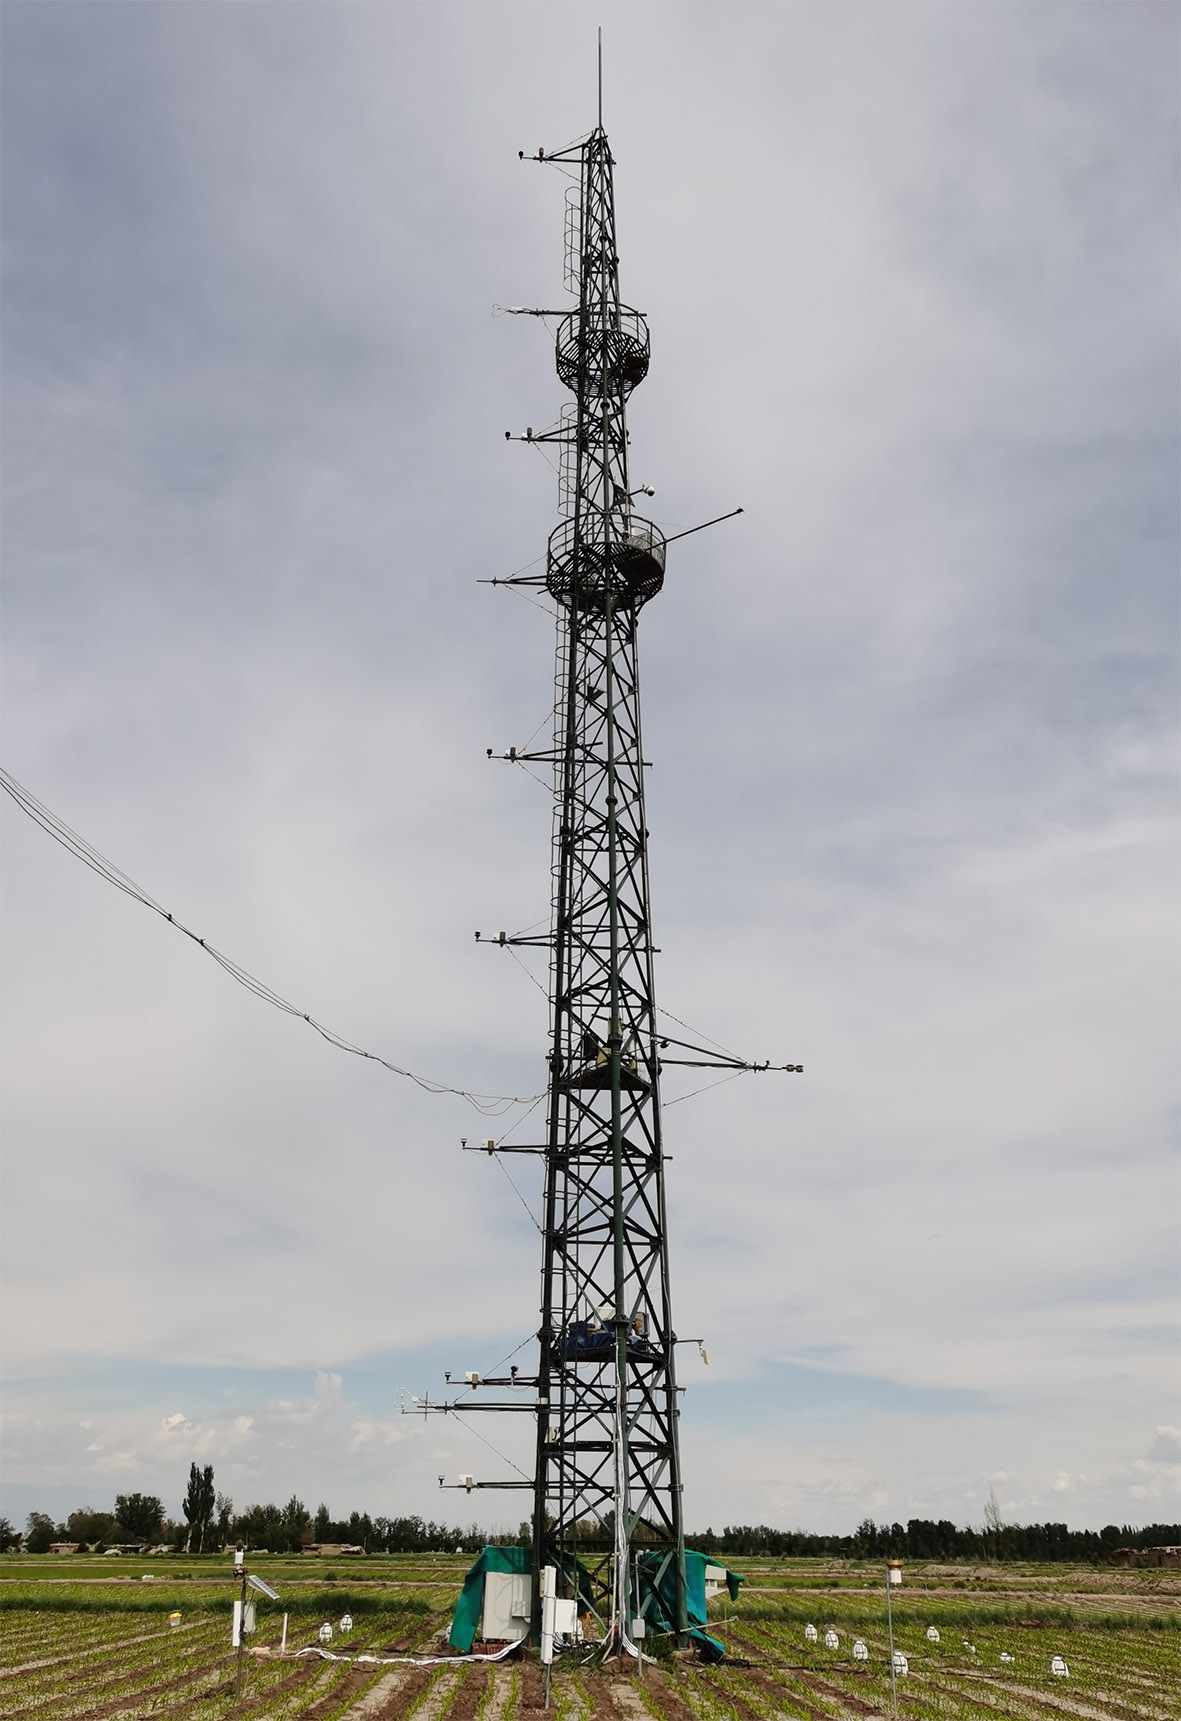 张掖黑河遥感站 AP200大气廓线测量系统